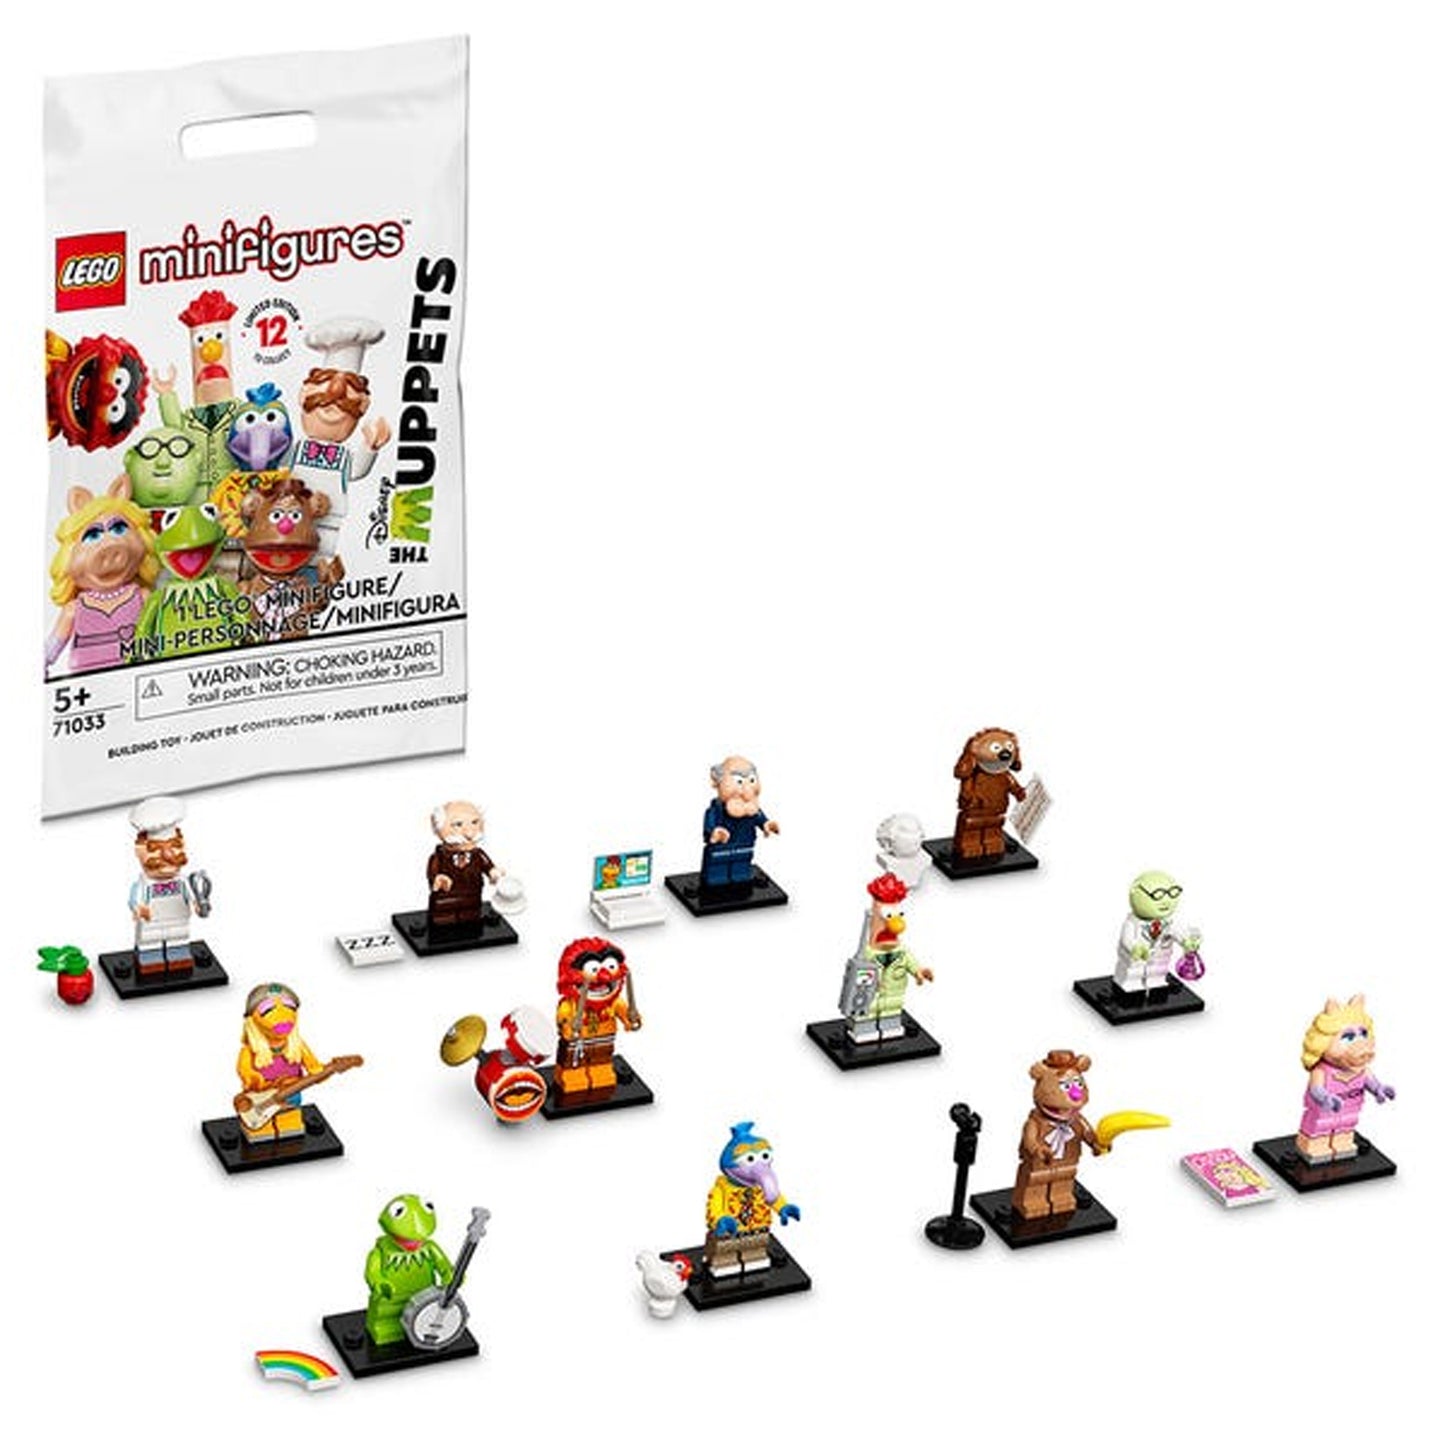 Lego Minifiguras Los Muppets 7 piezas - Crazygames